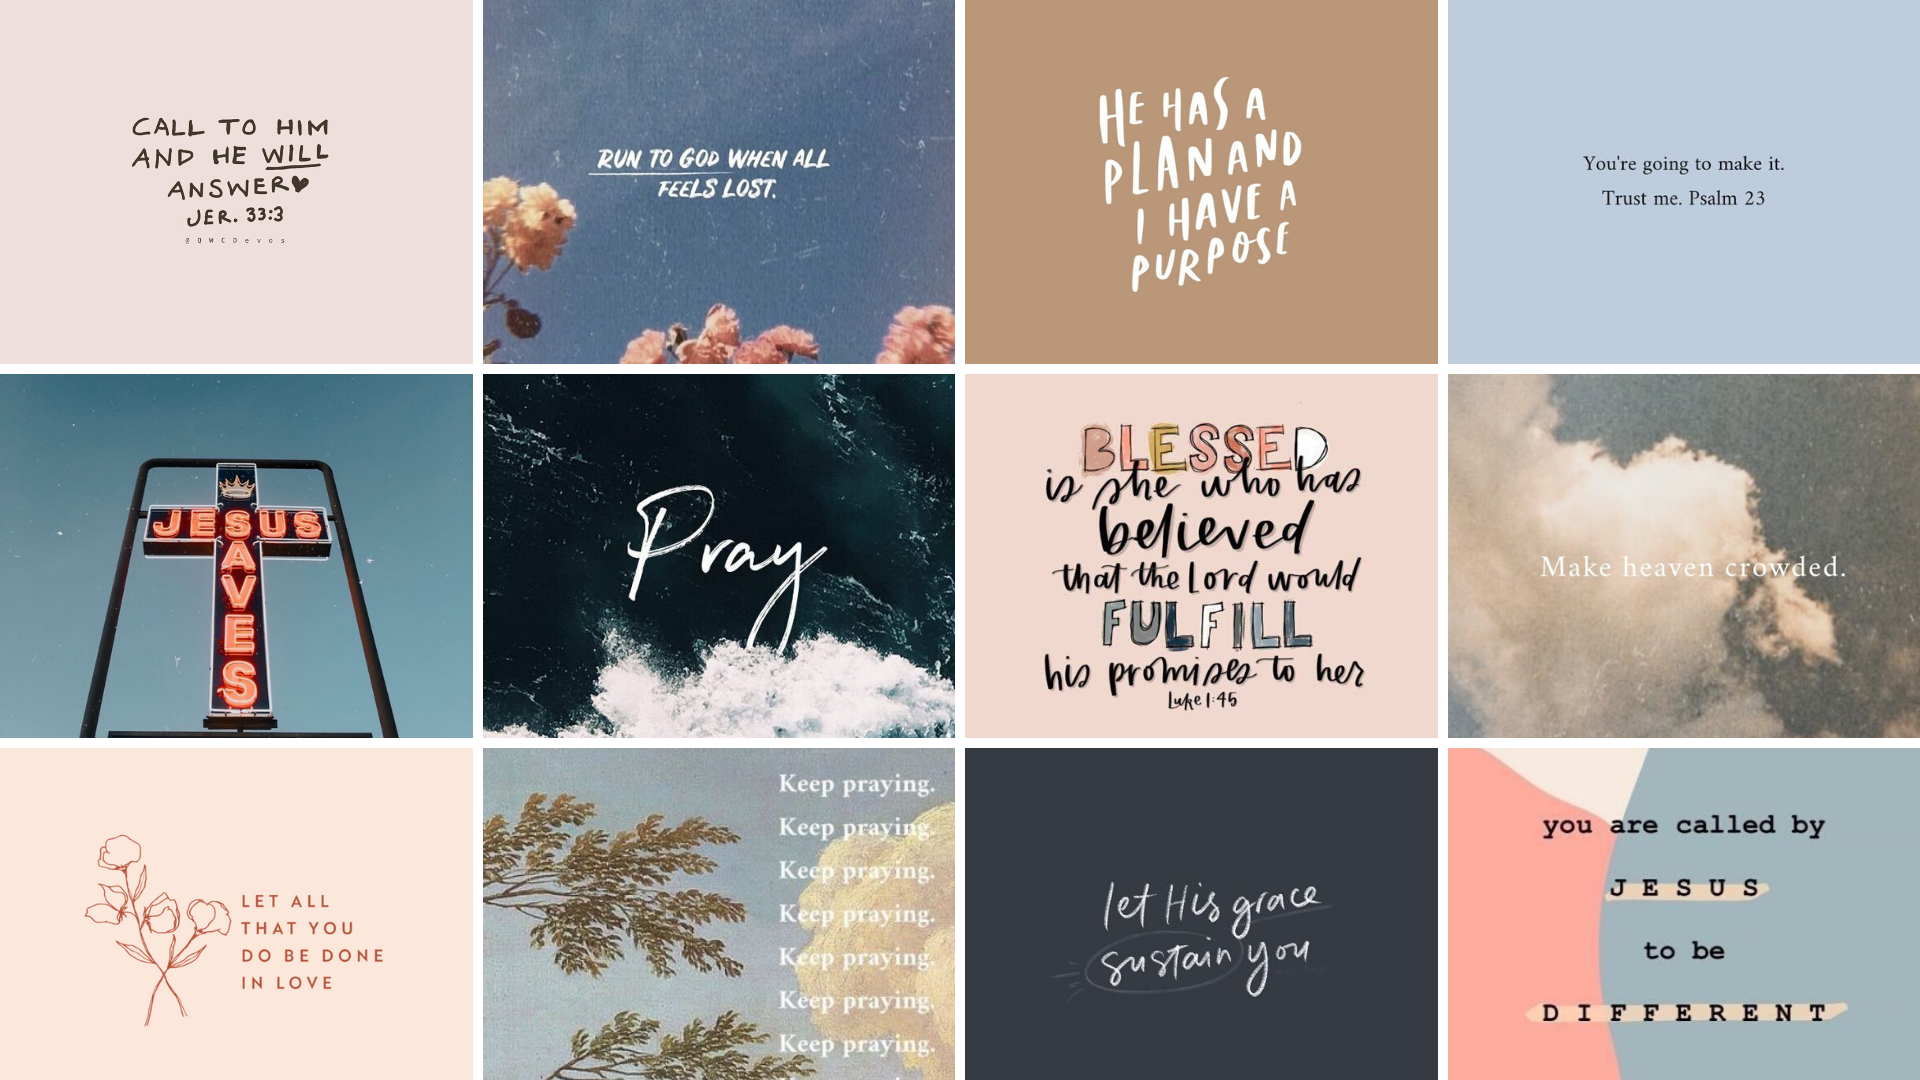 Christian Desktop Wallpaper. Bible verse desktop wallpaper, Cute desktop wallpaper, Inspirational desktop wallpaper